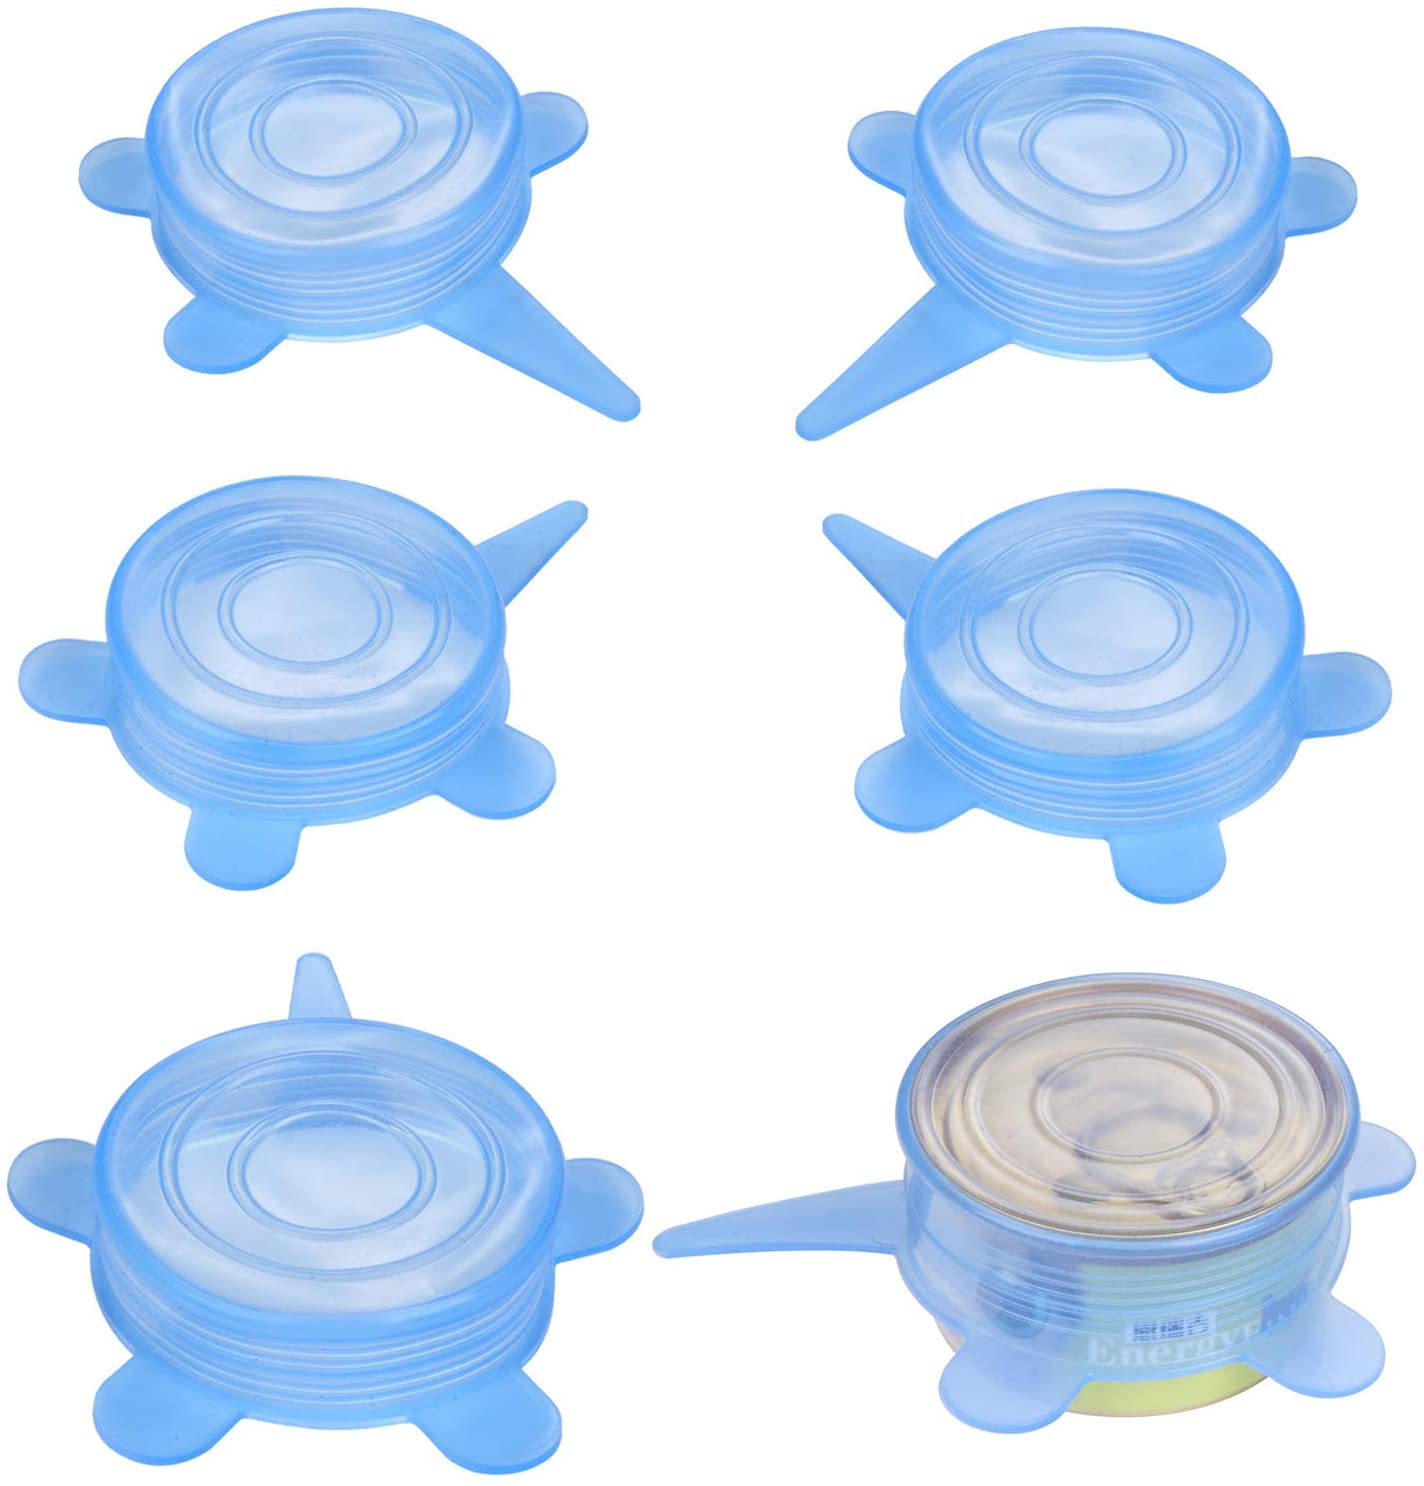  SLSON 6 Paquetes de Tapas de Silicona para latas de Comida para Mascotas, 1 para Todos los Gatos universales y elásticas, sin BPA, para Perros y Gatos, Cubiertas de Alimentos enlatados, Color Azul 